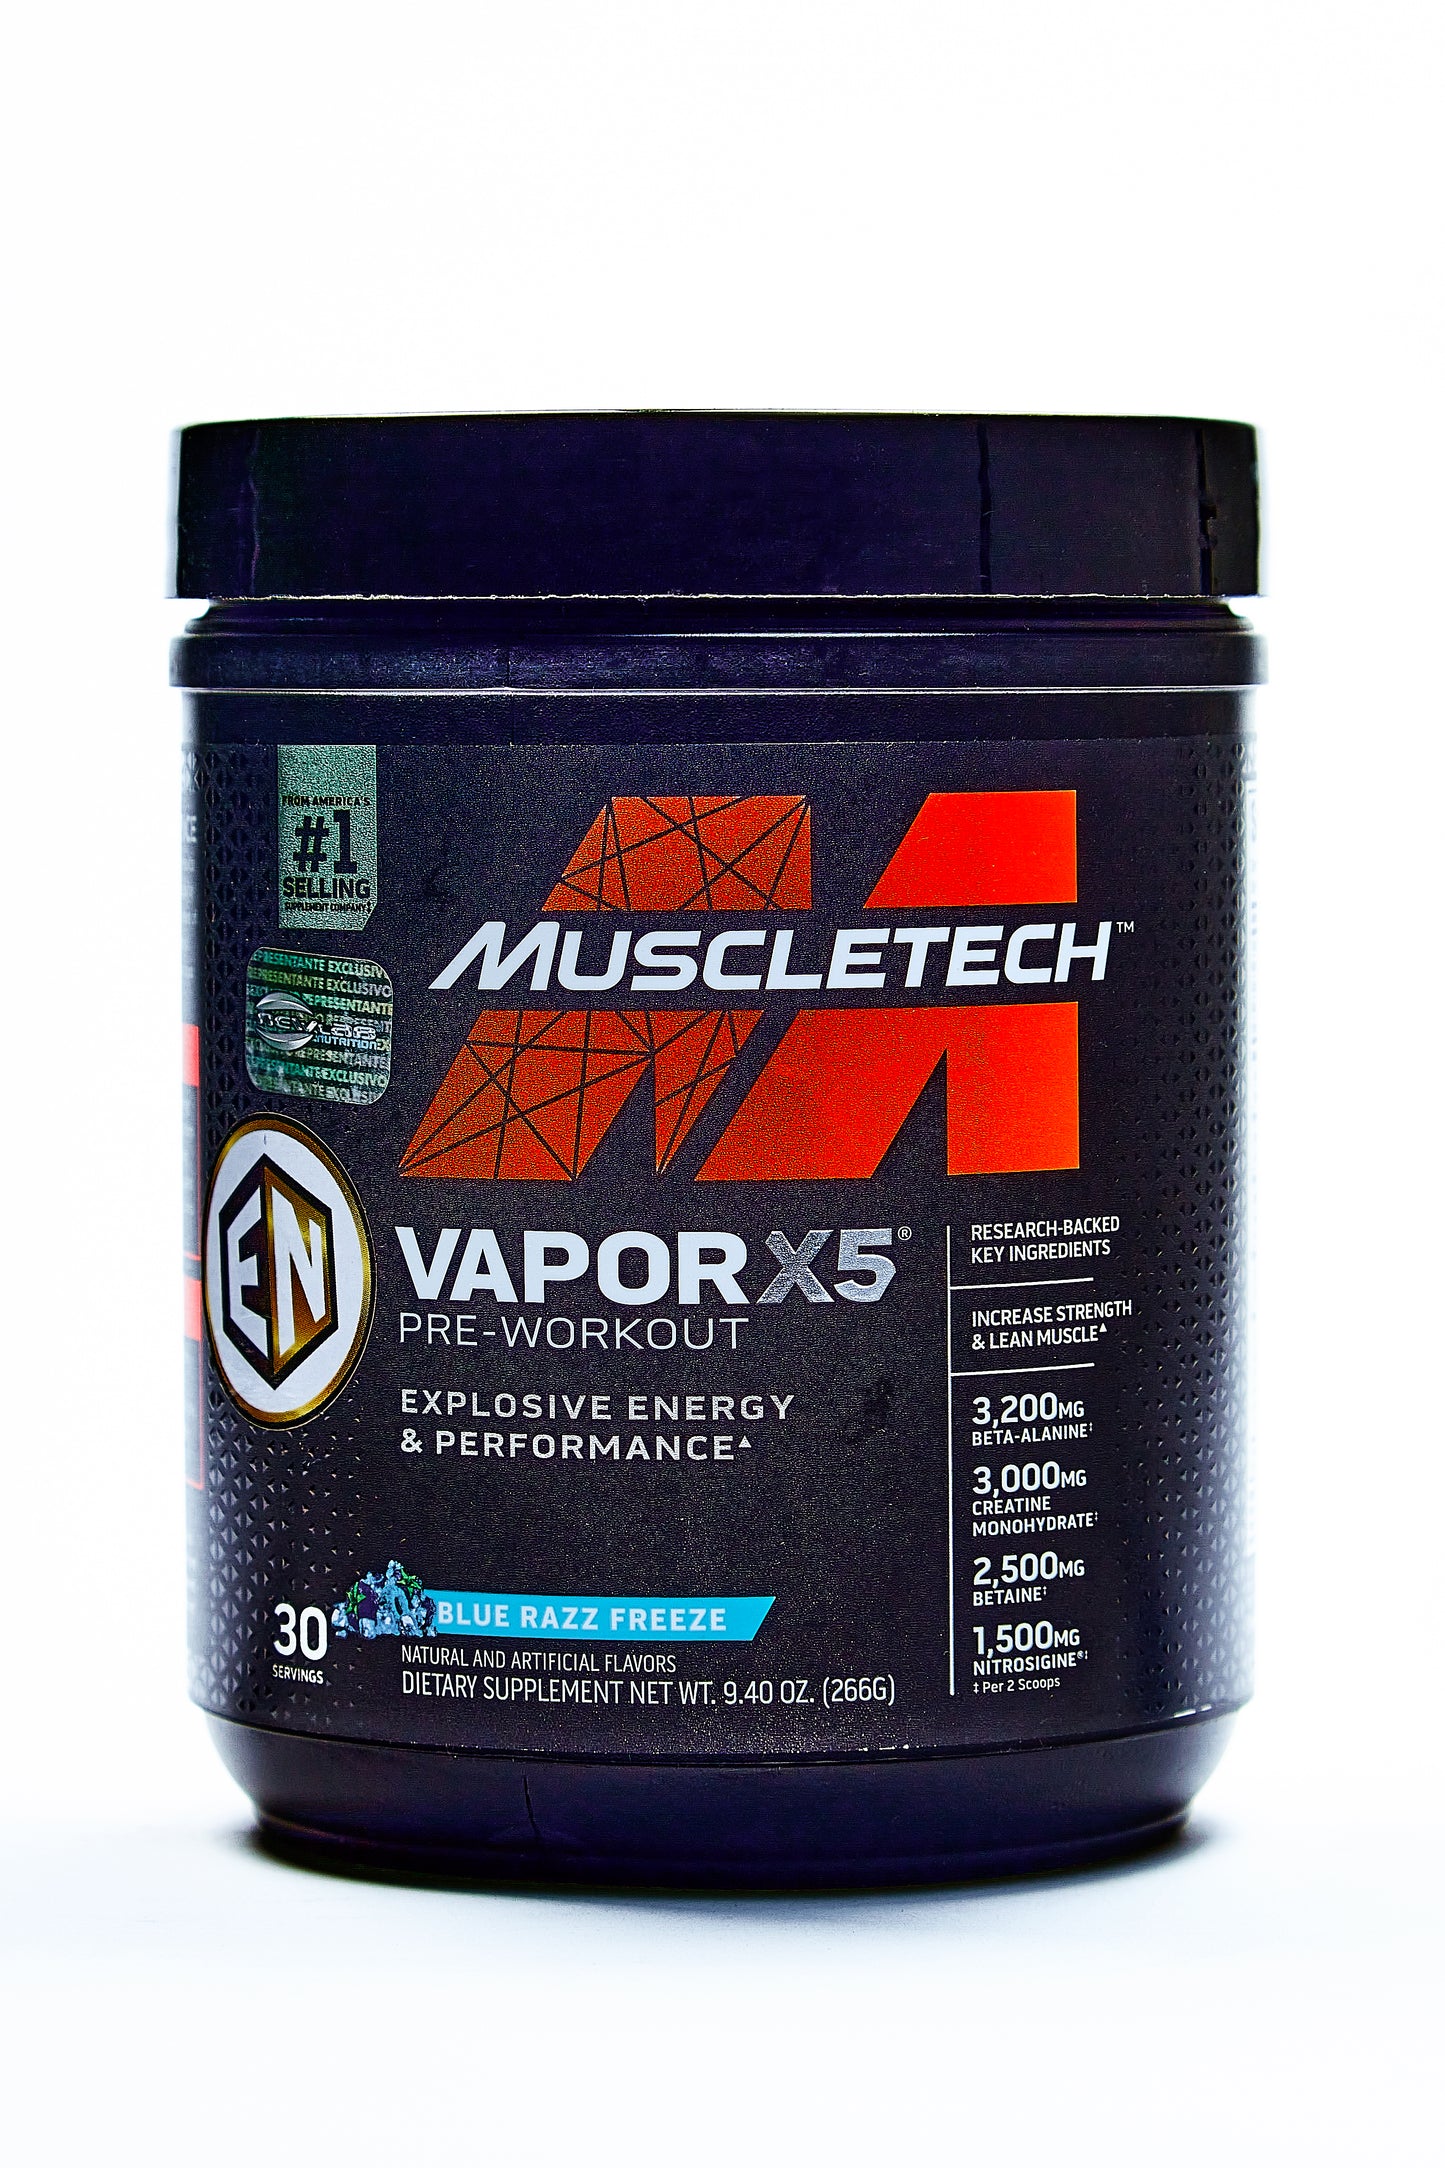 Muscletech Vapor x5